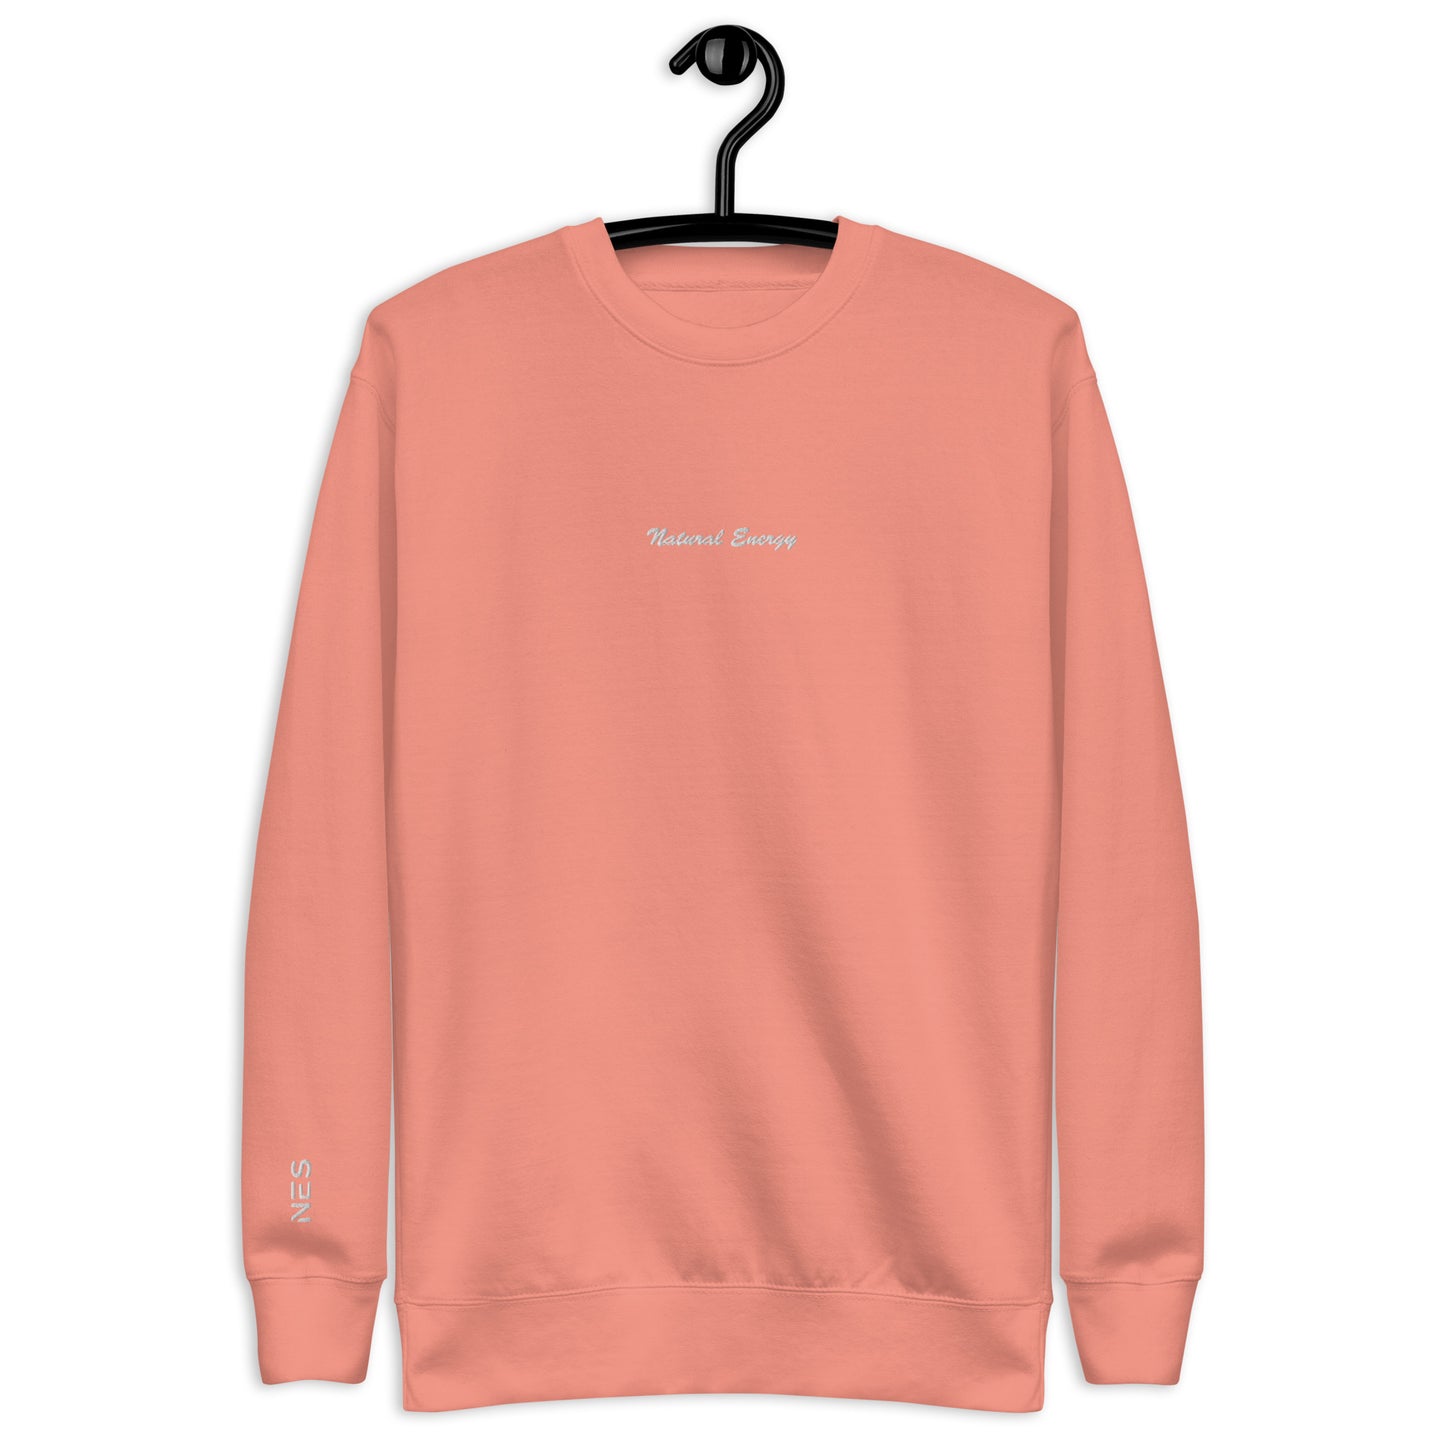 Cursive Premium Sweatshirt